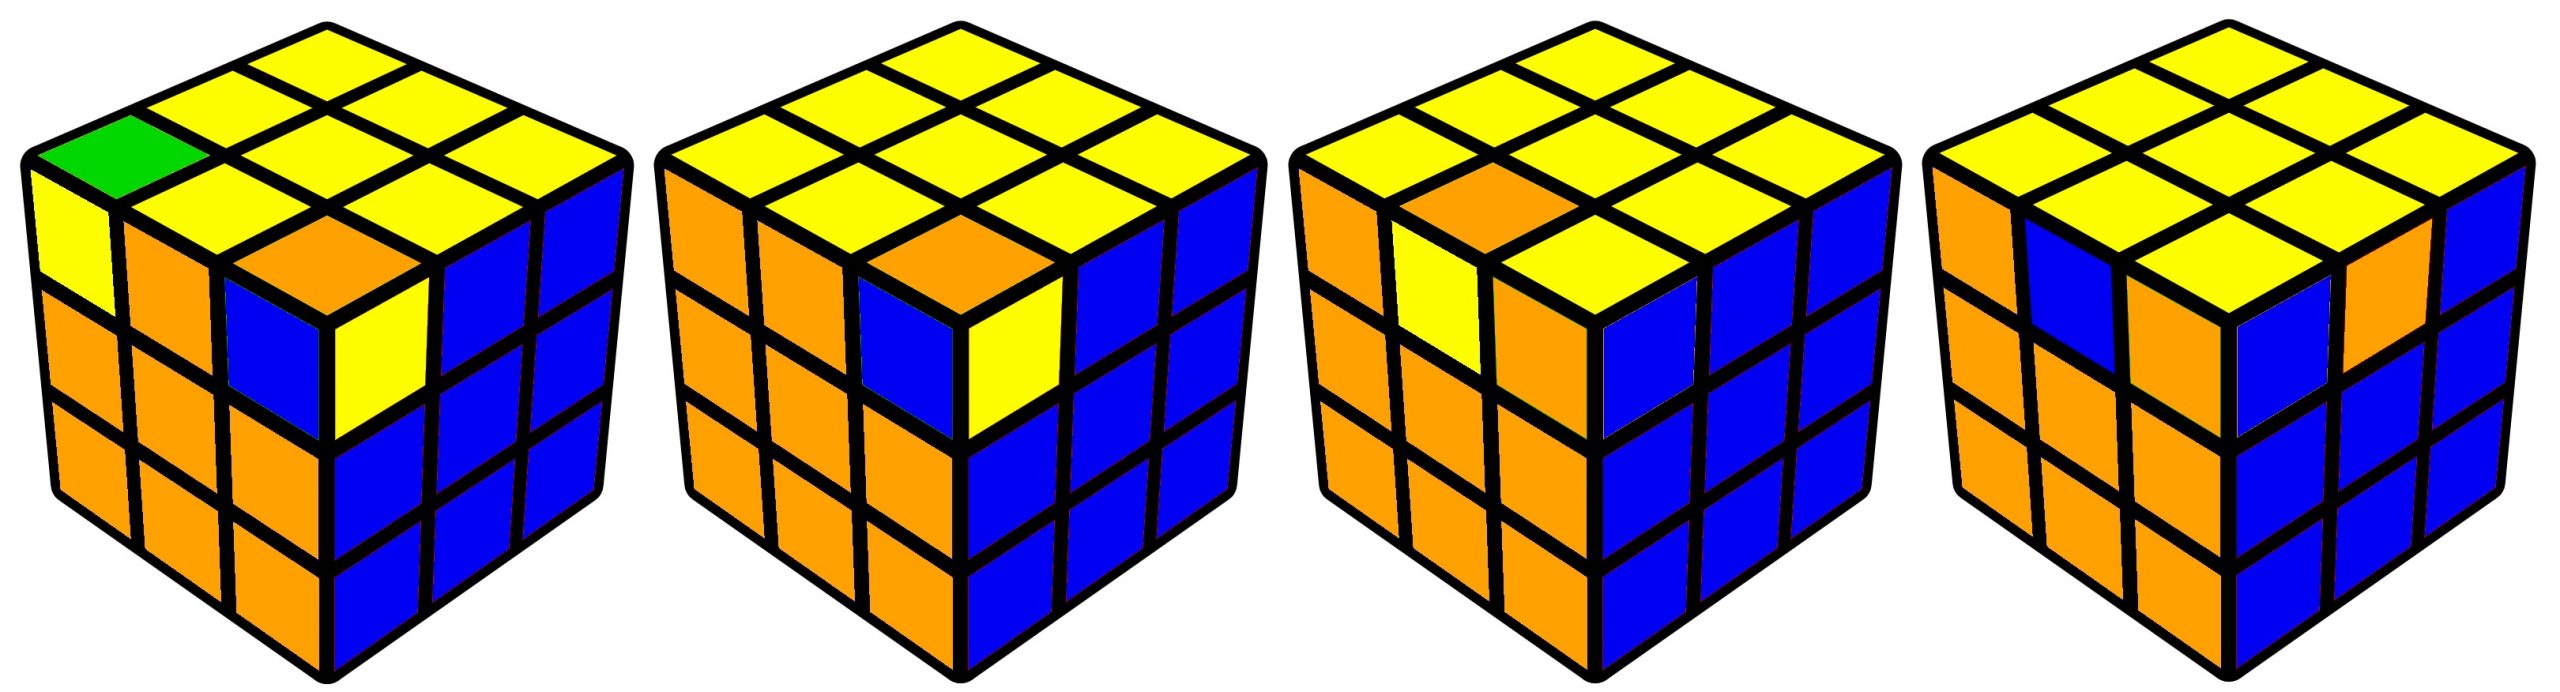 Diferenças entre os tipos de cubos: – CINOTO